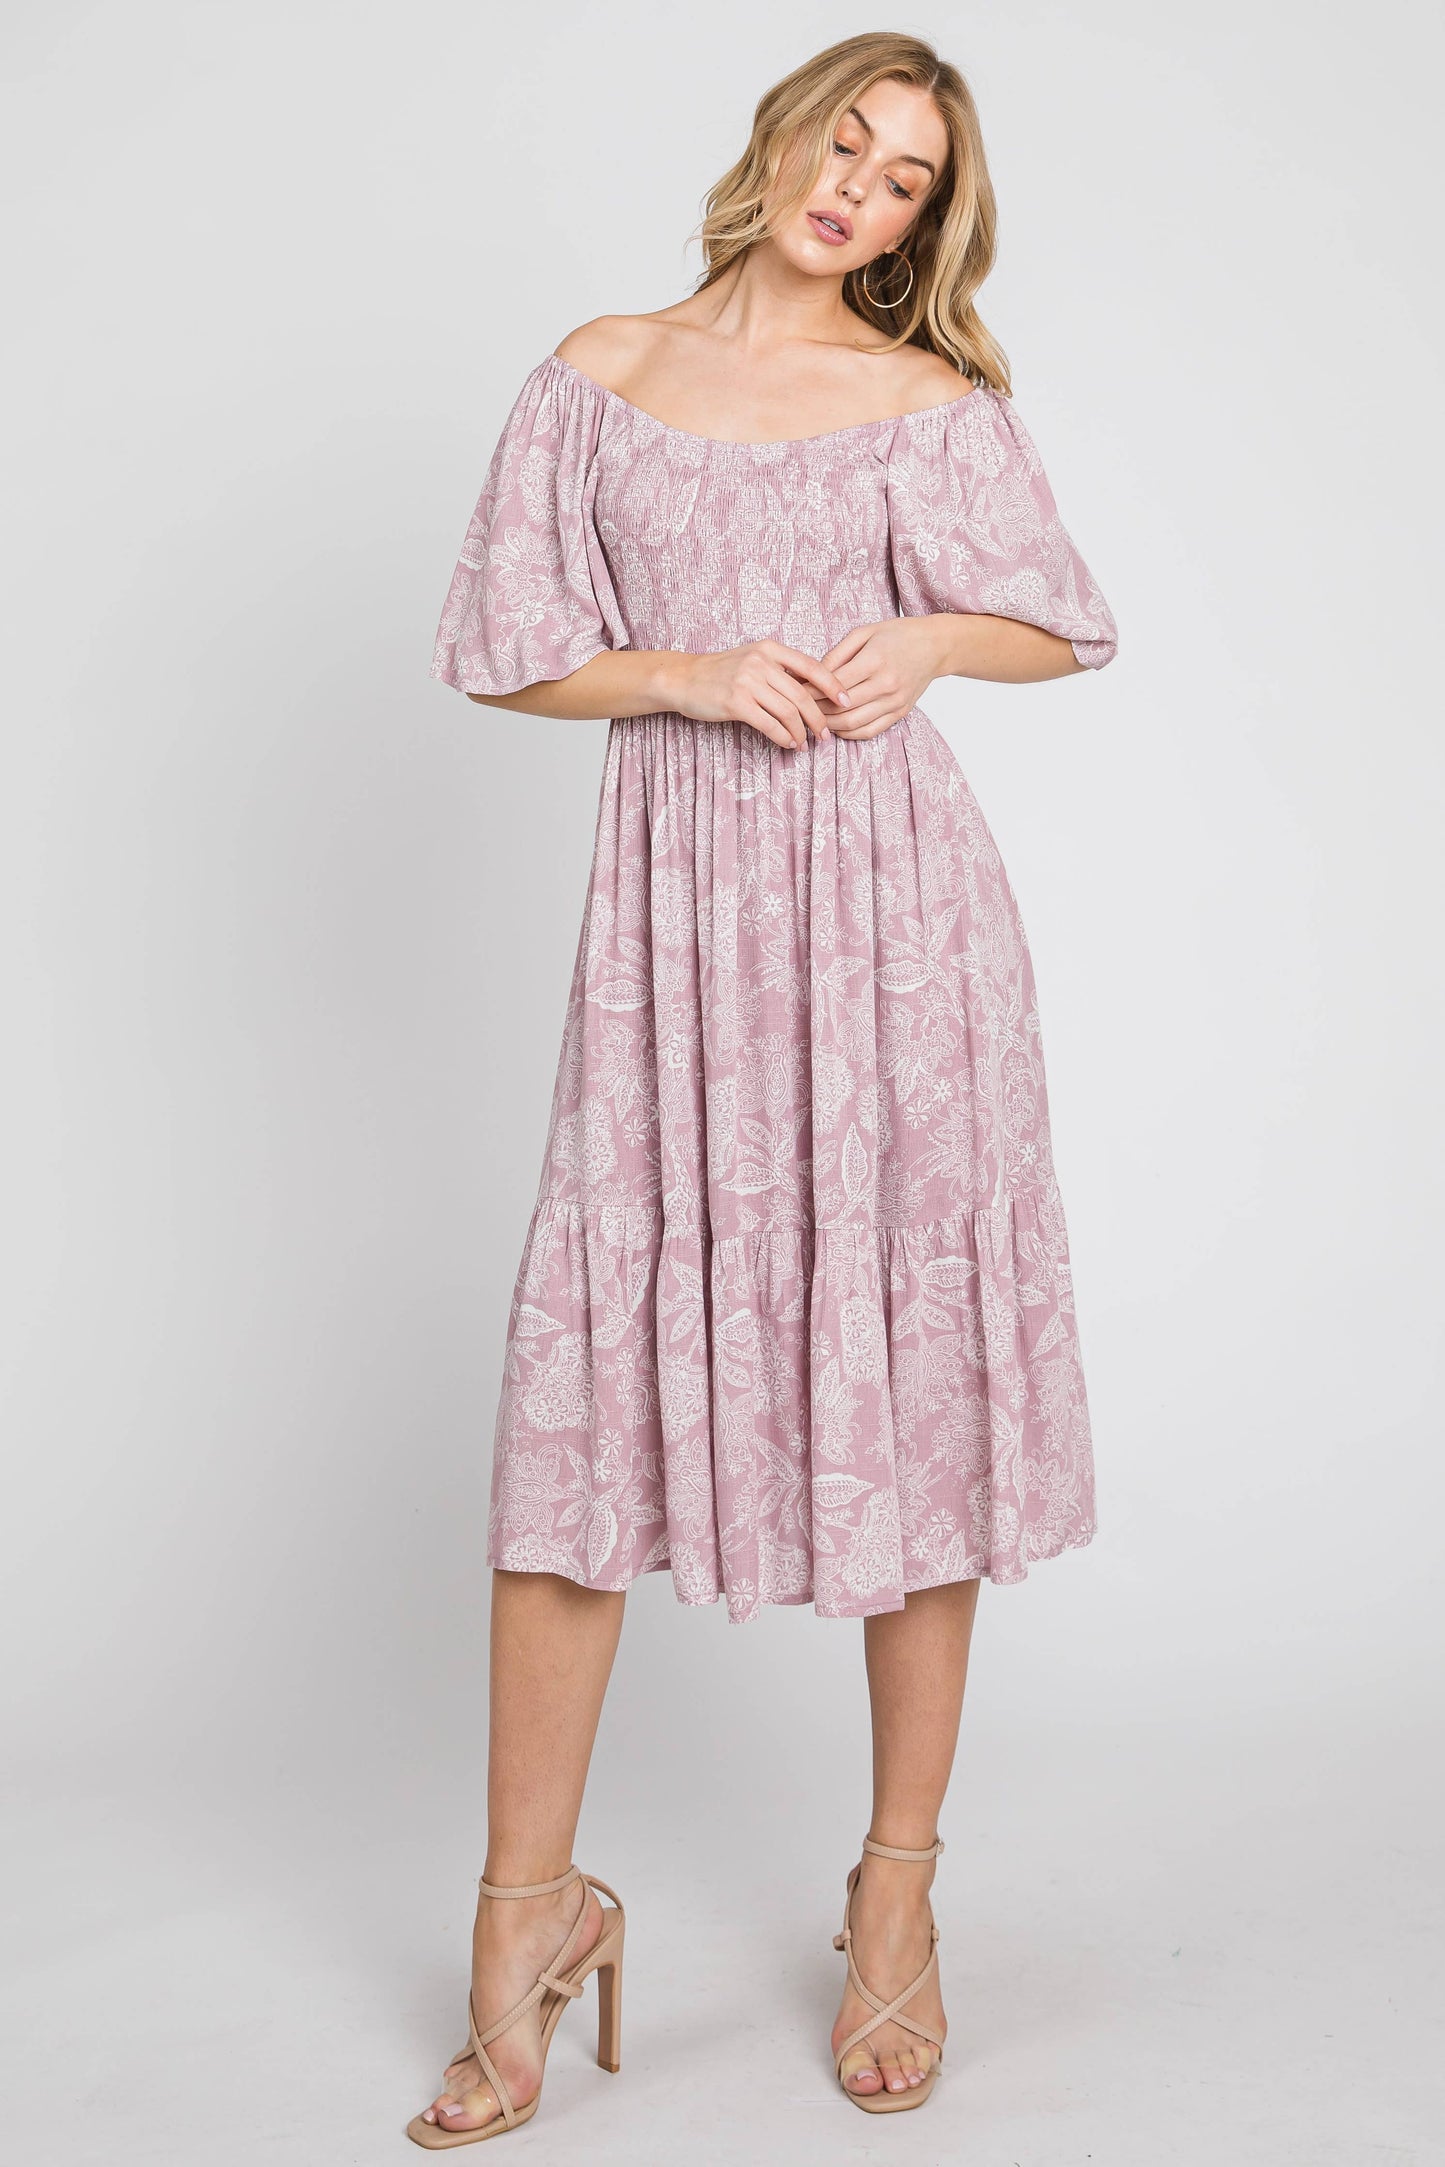 Vintage Kendra Flare Sleeve Smocked Dress